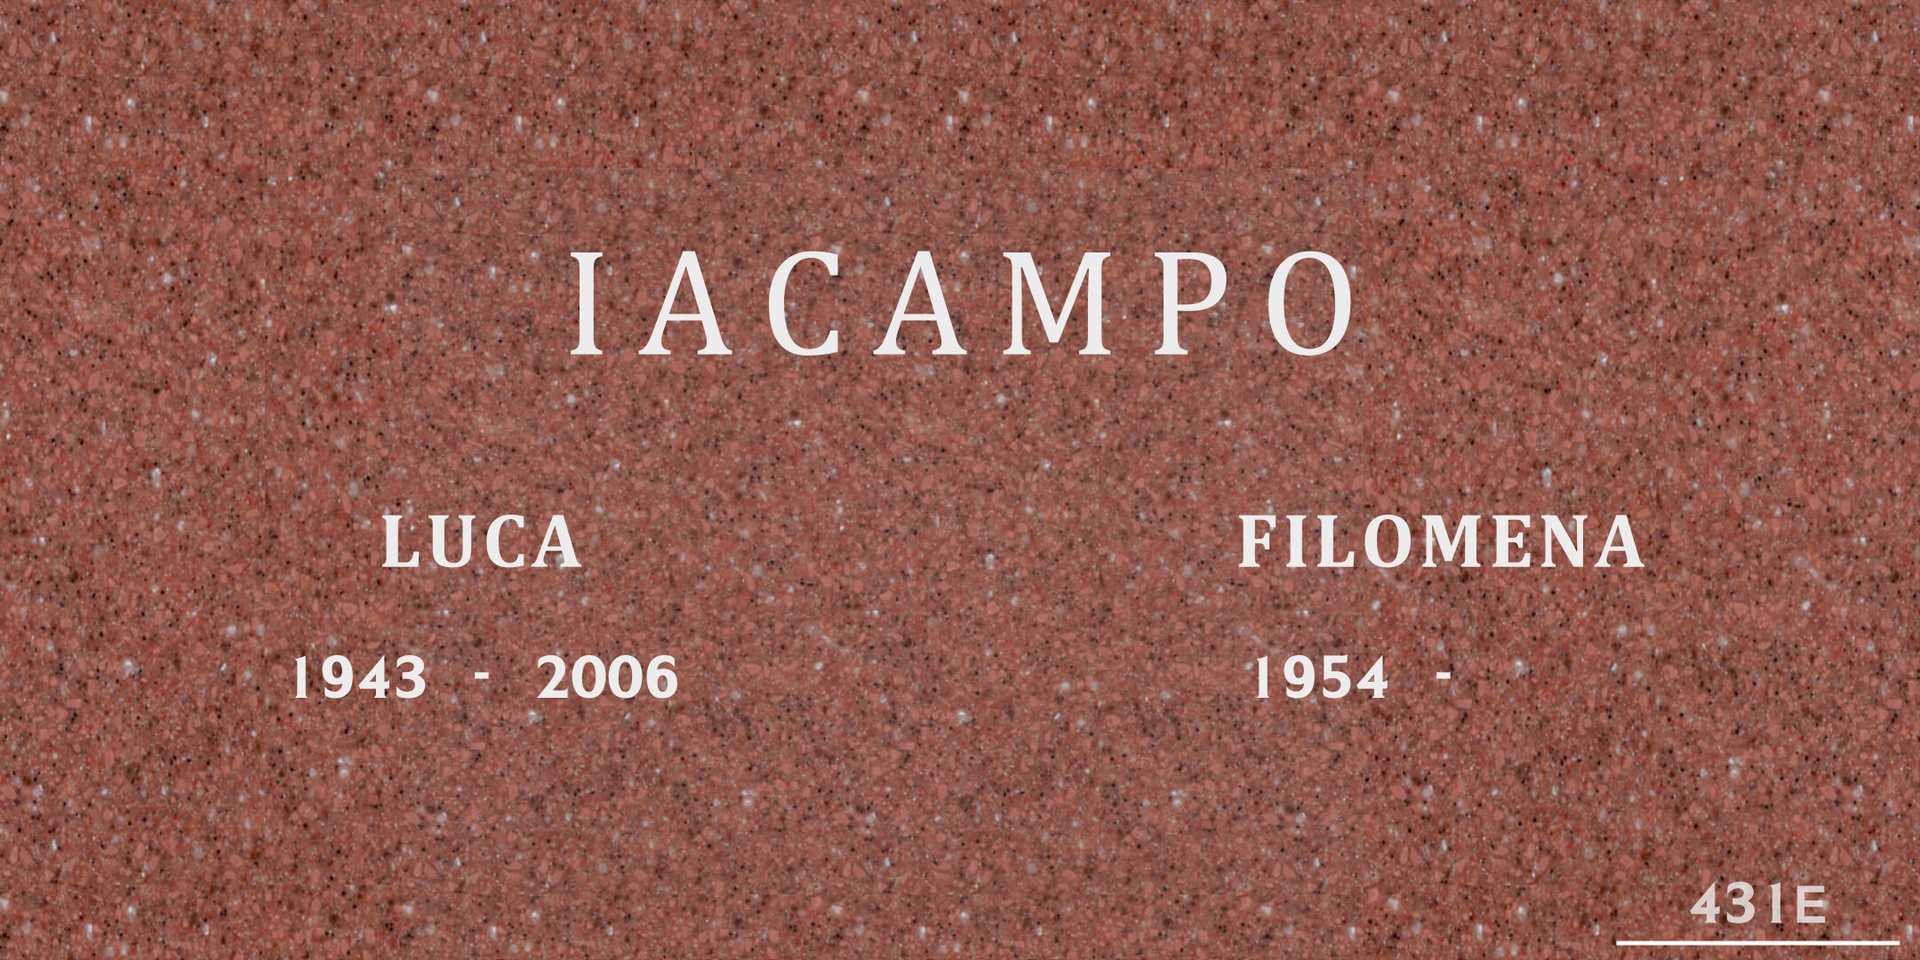 Luca Iacampo's grave